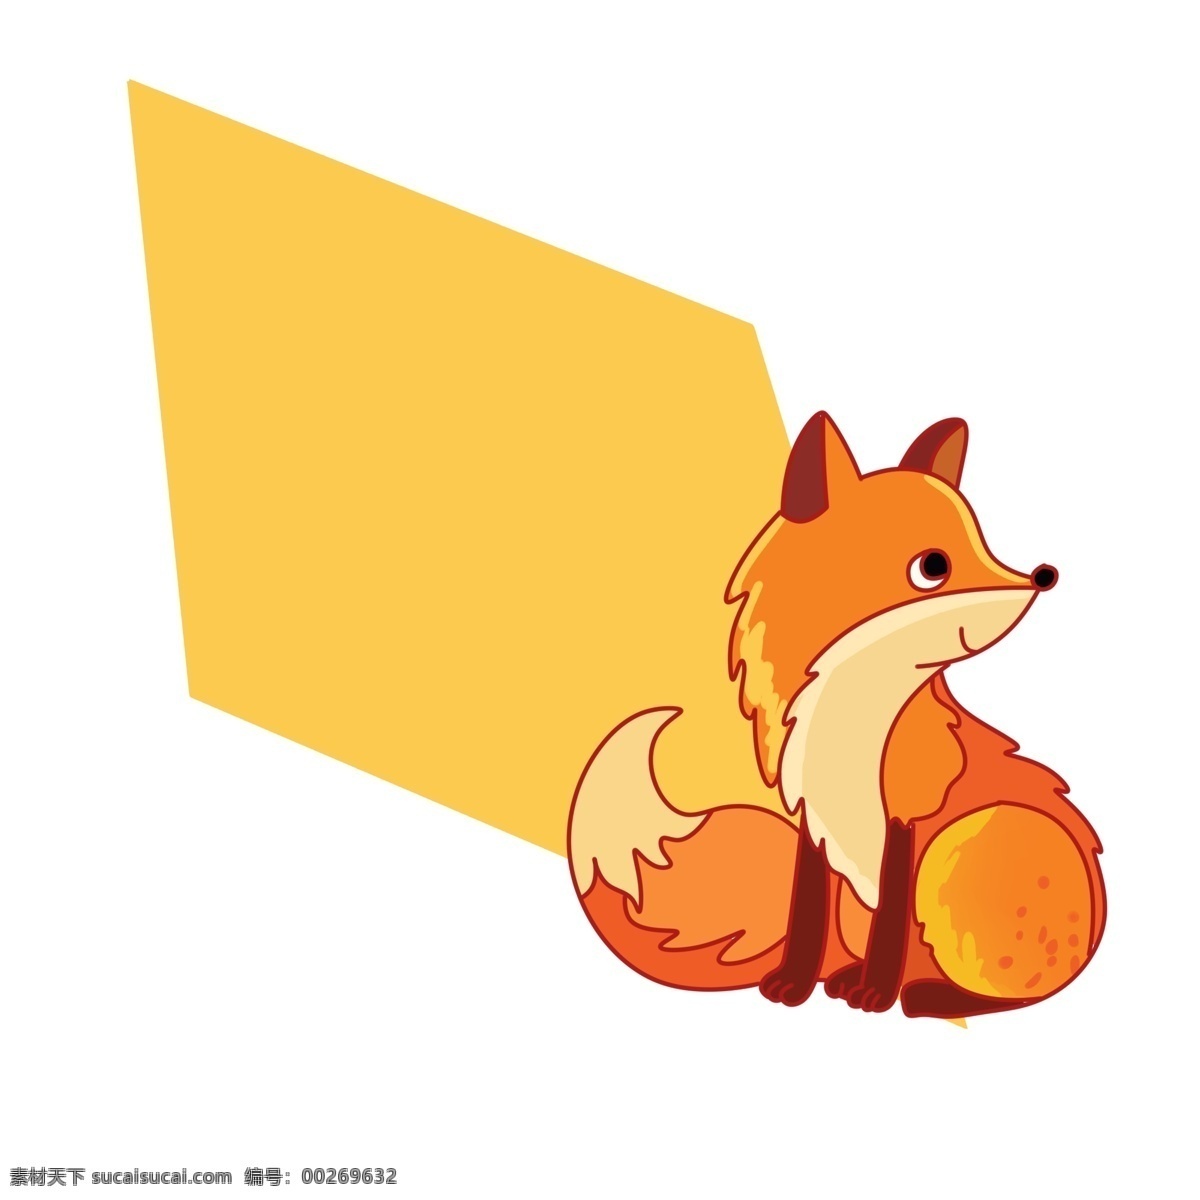 可爱 小 狐狸 装饰 边框 可爱的小狐狸 小狐狸边框 小动物边框 边框装饰 黄色边框 创意边框 卡通边框插画